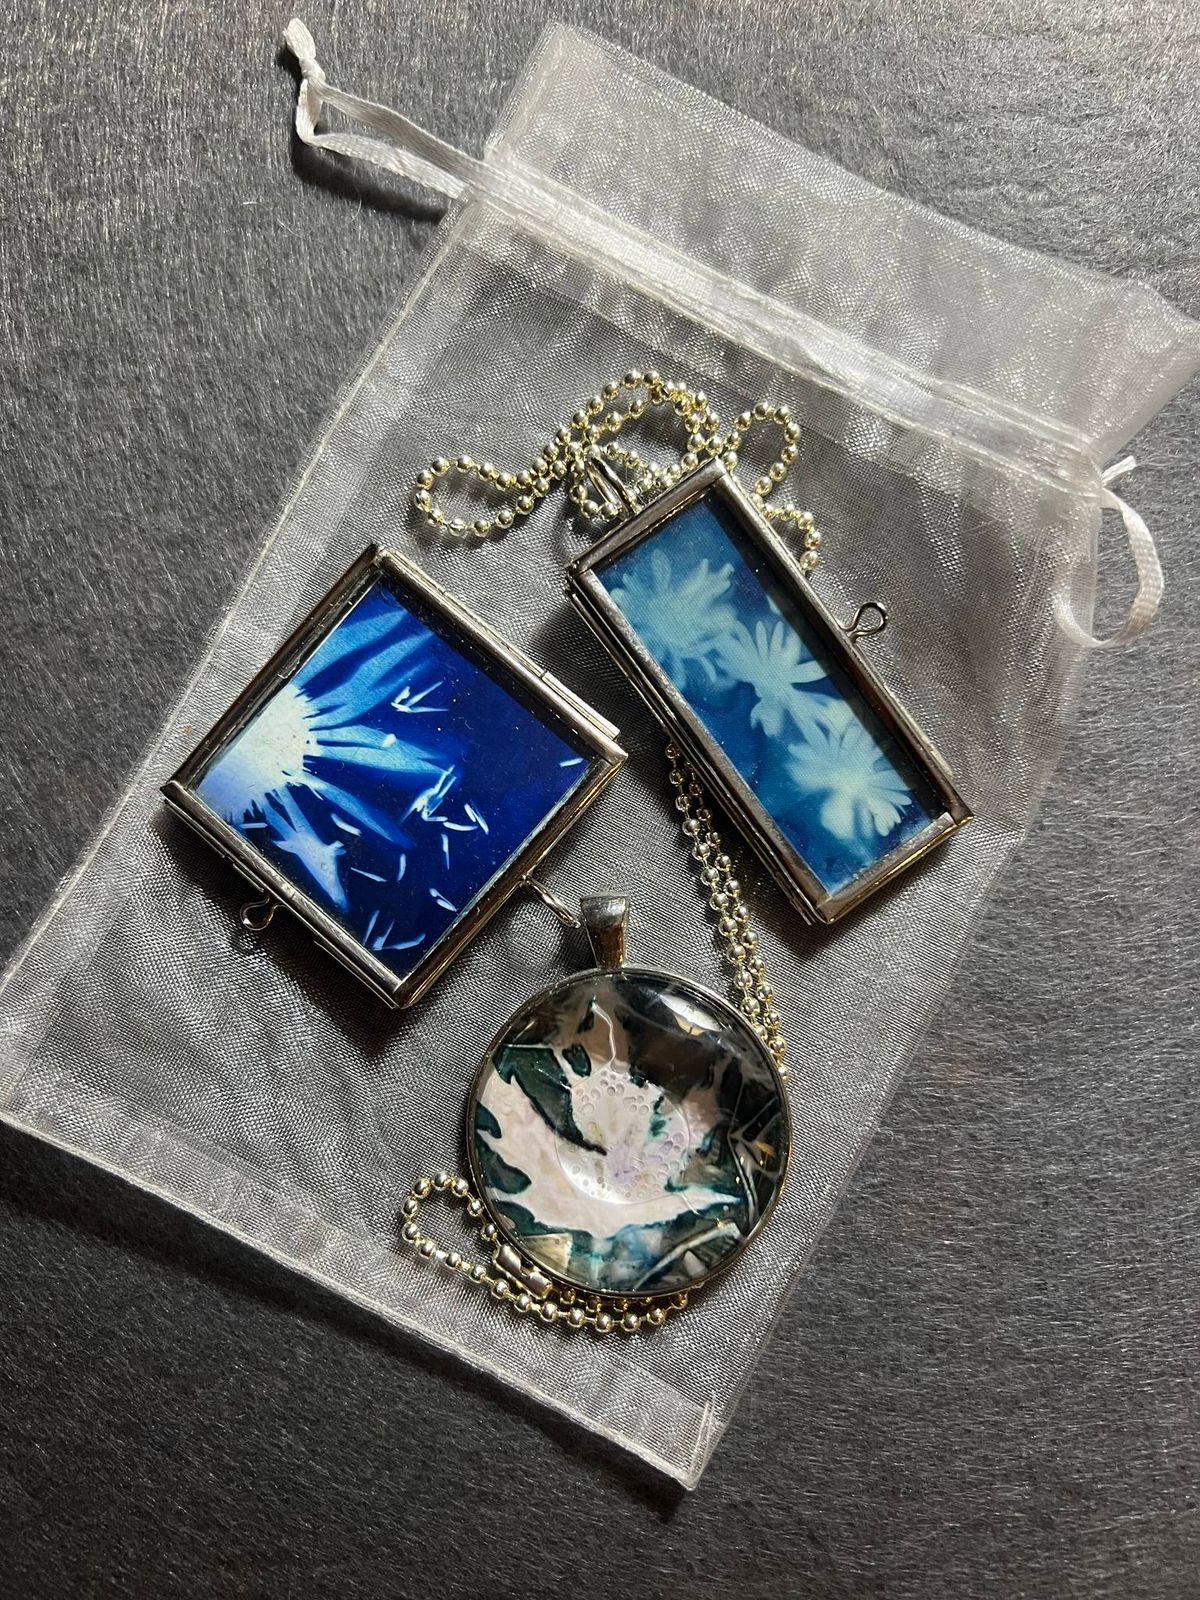 Cyanotype Jewelry Workshop